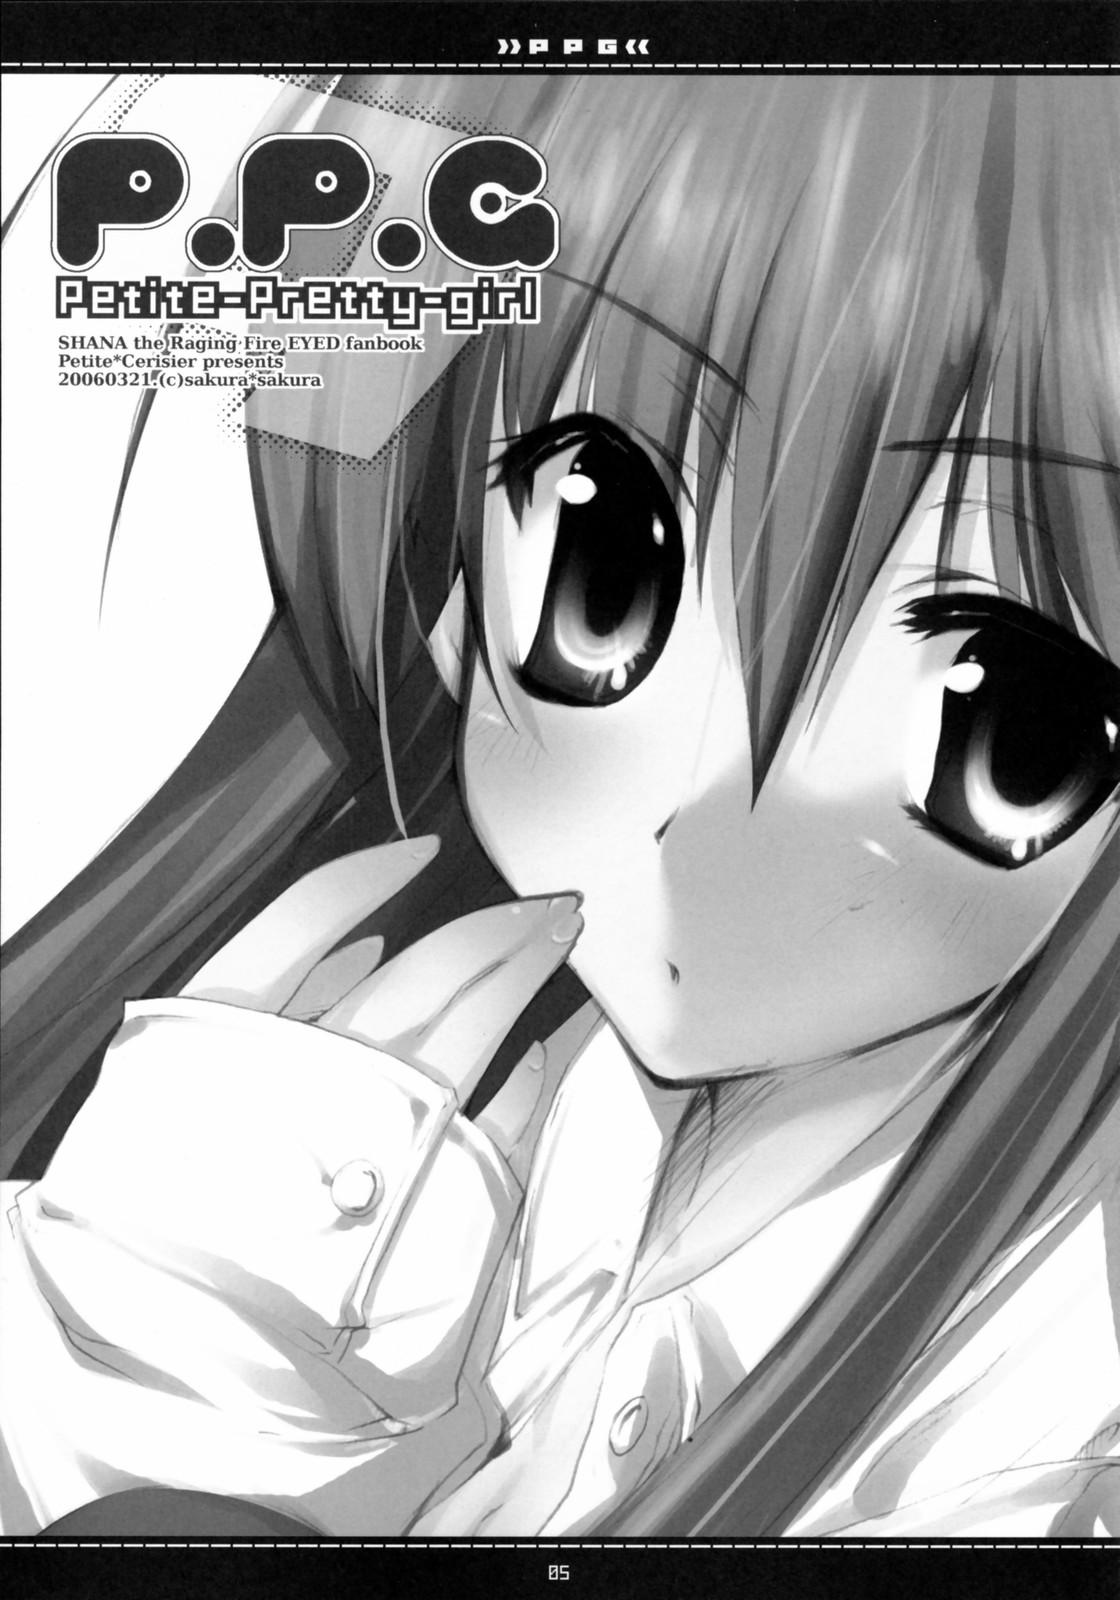 Fucked Hard (Suteki Kuukan 2) [Petite*Cerisier (Sakura*Sakura)] P.P.G. 9 Petite-Pretty-girl (Shakugan no Shana) - Shakugan no shana Gemendo - Page 2